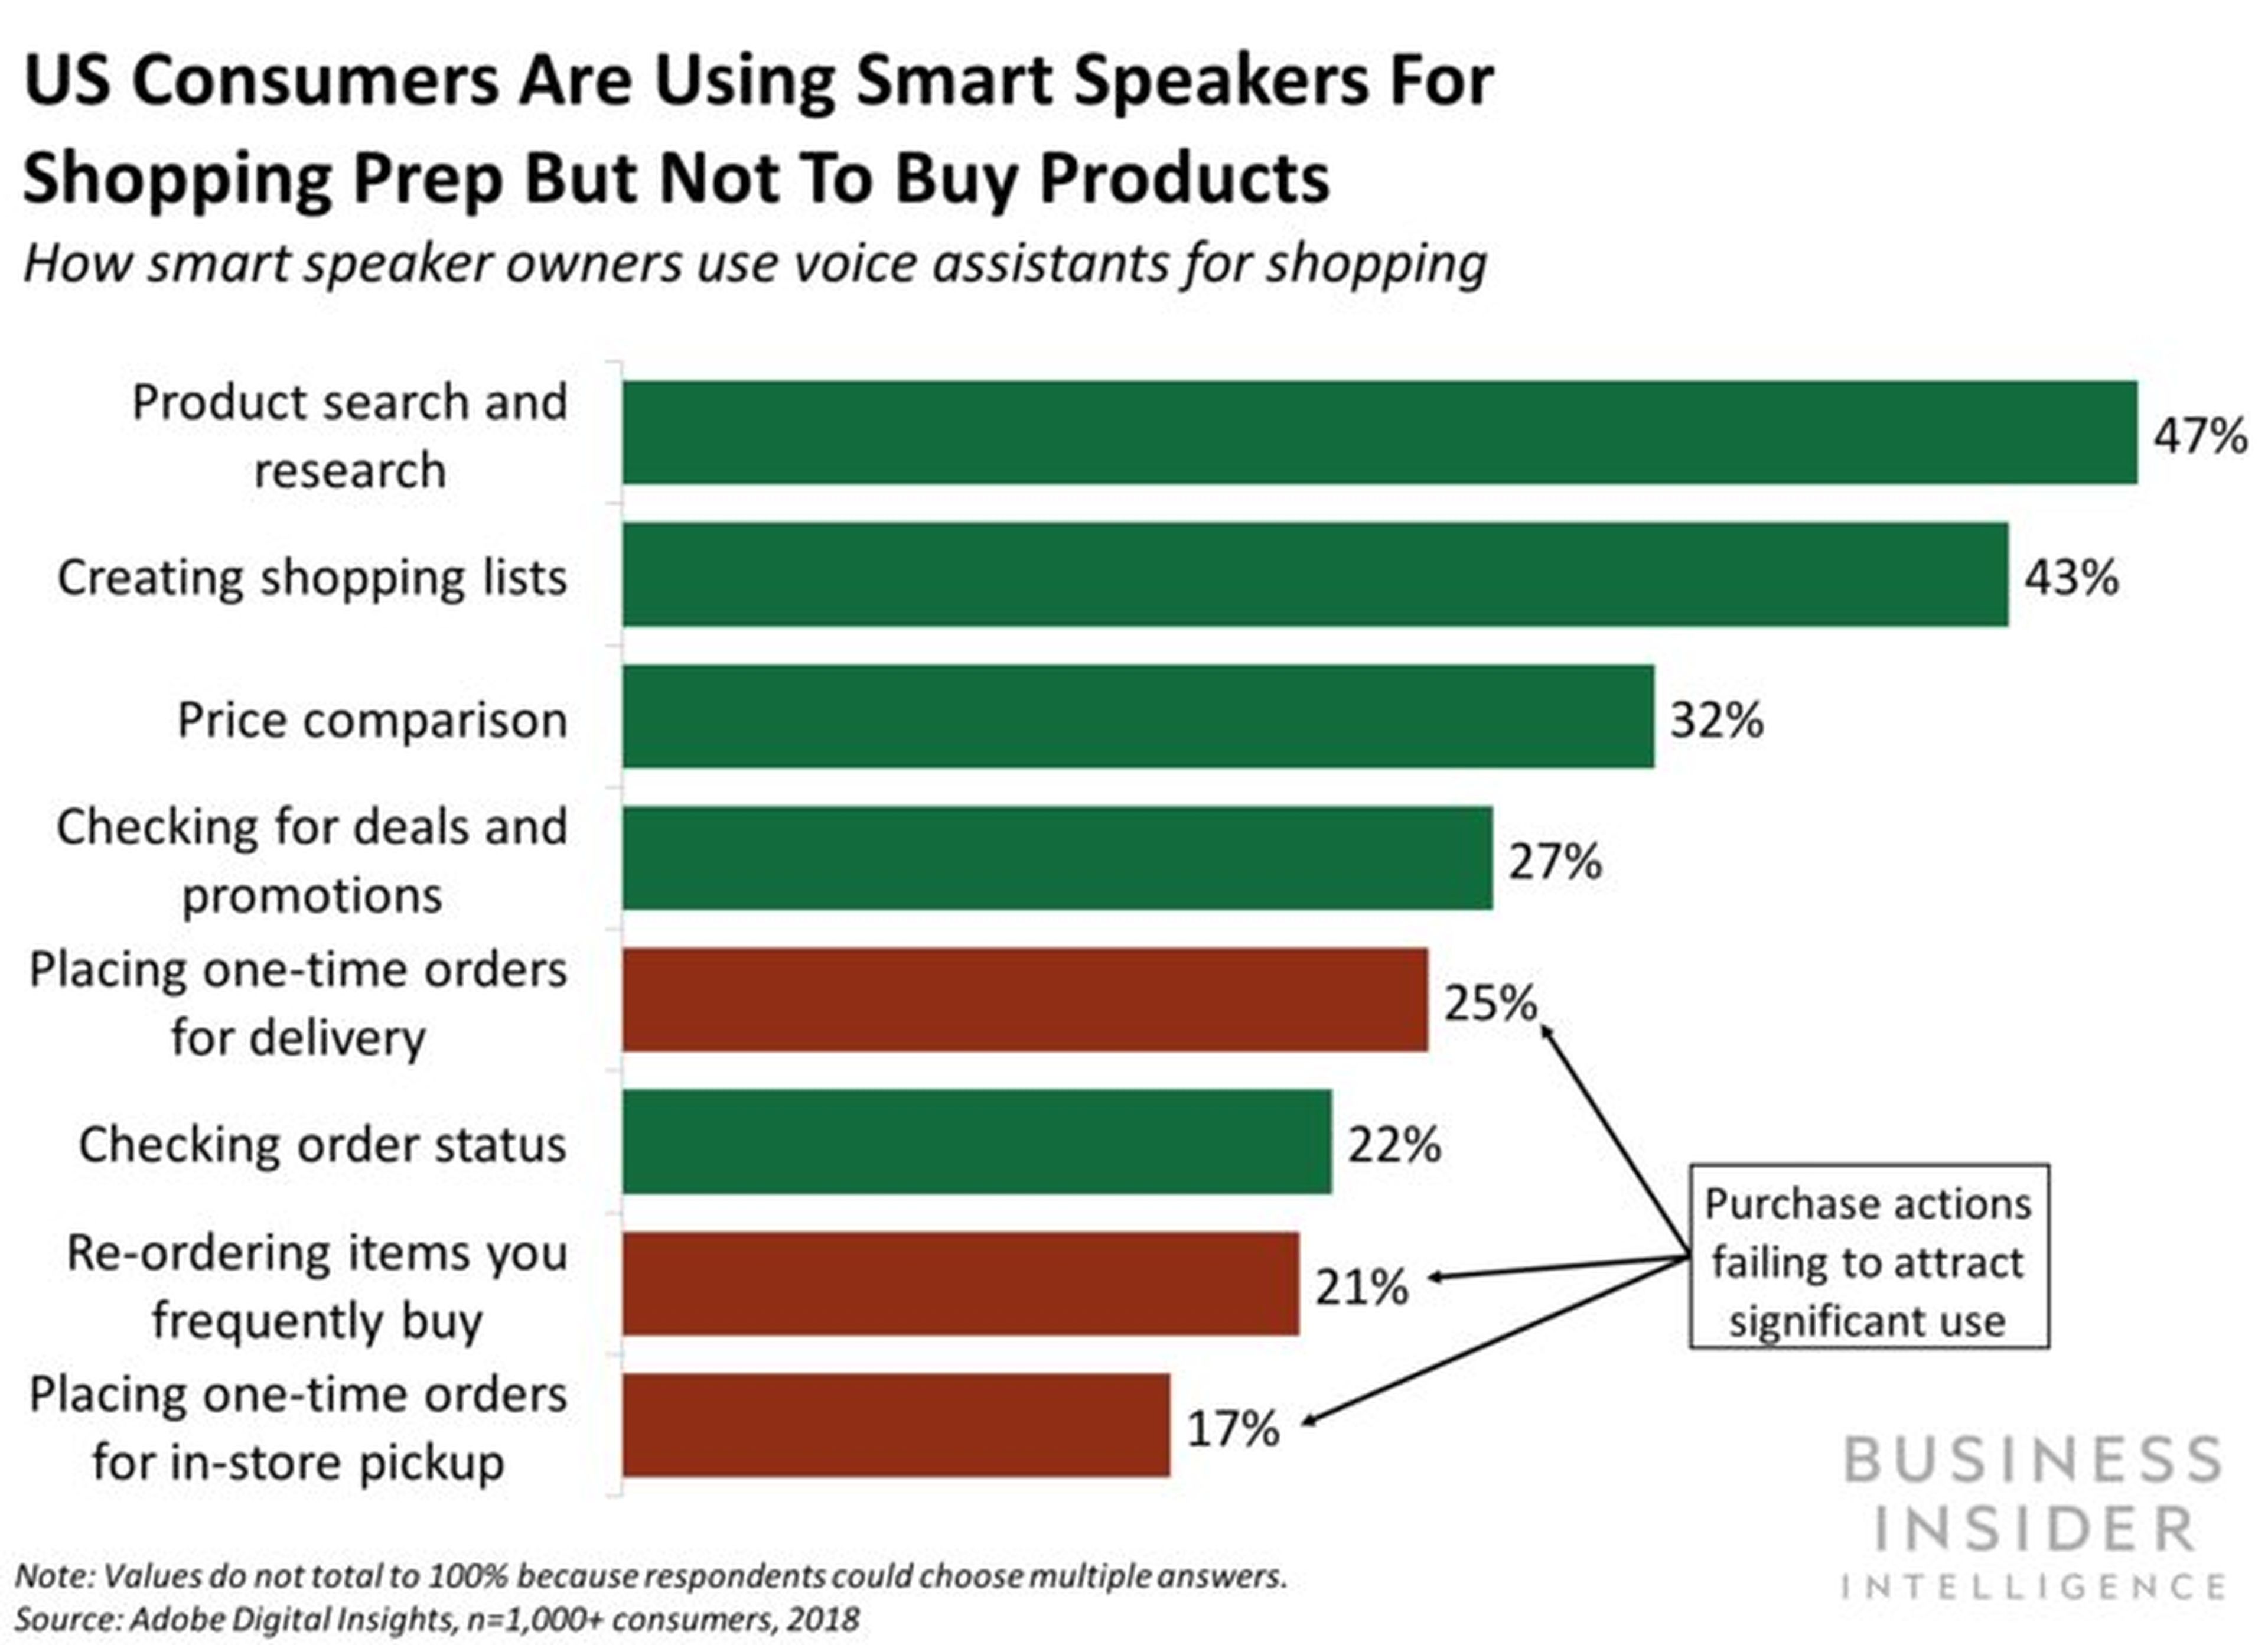 Los consumidores de EE.UU. usan los altavoces inteligentes más para informarse sobre el producto que les interesa que para comprar directamente.